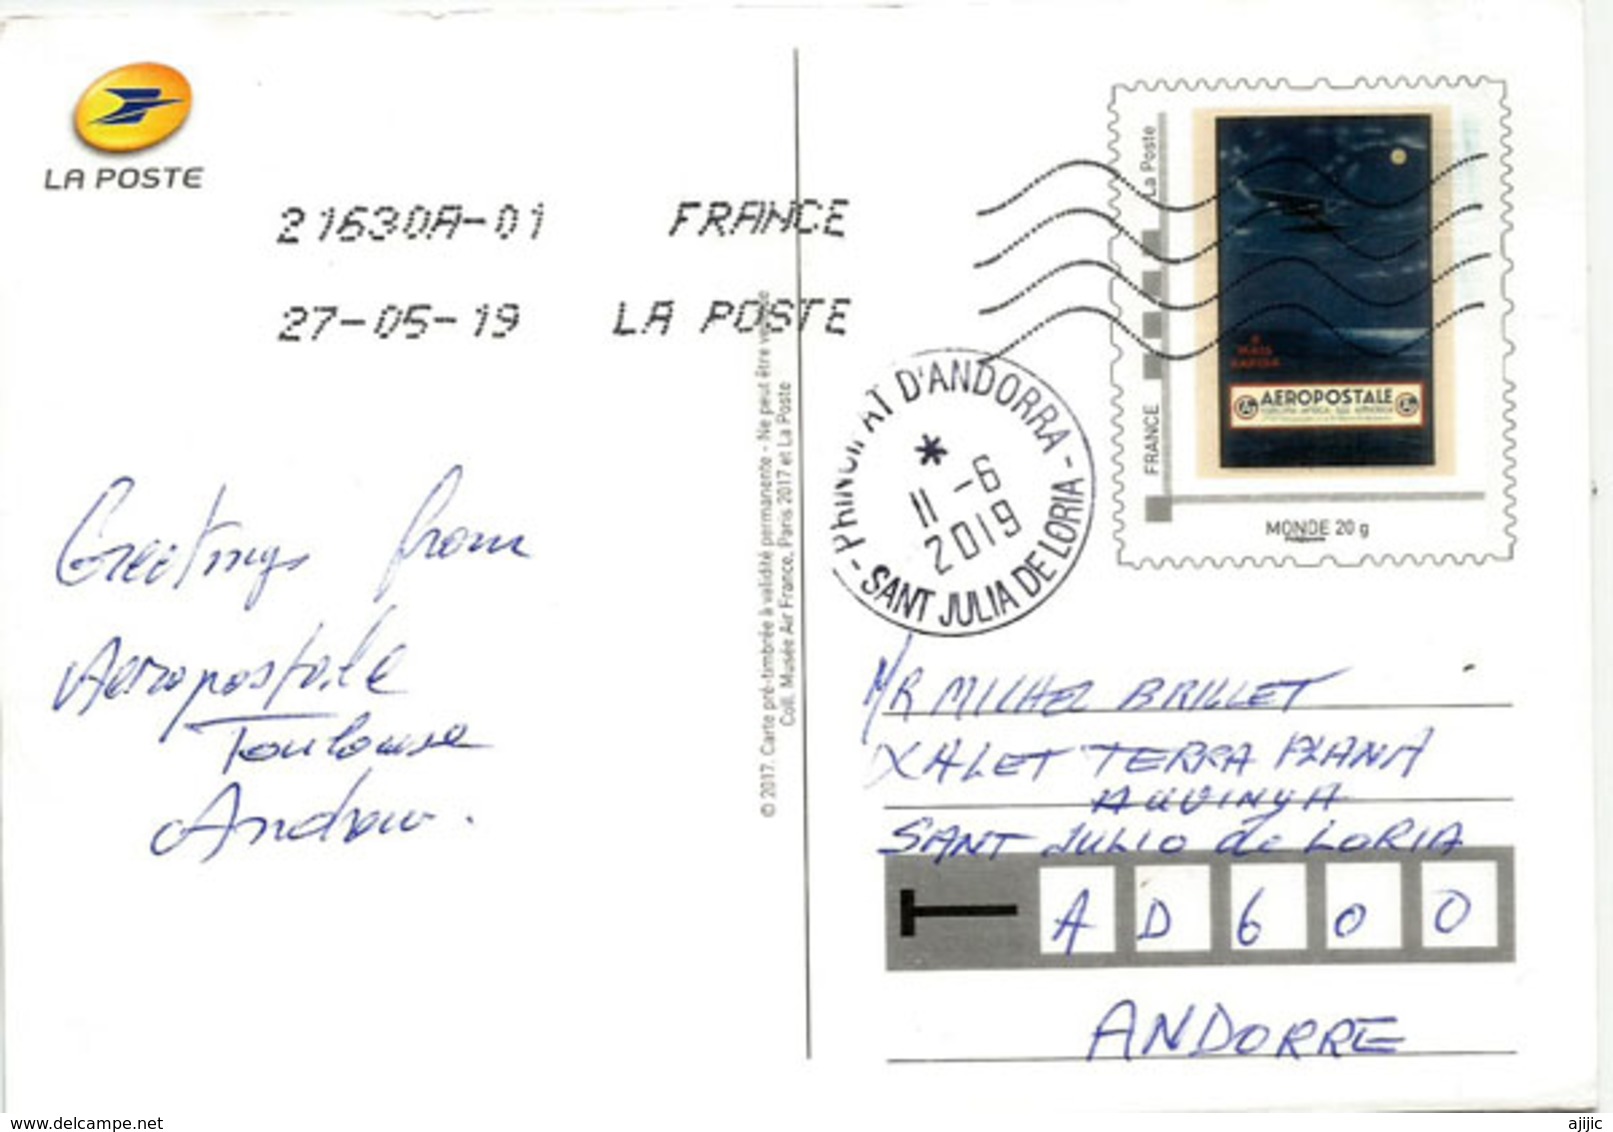 Mémoire D'Aéropostale,l'Afrique Du Nord Par Avion, Carte Postale Adressé ANDORRA, Avec Timbre à Date Arrivée - 1919-1938: Entre Guerres